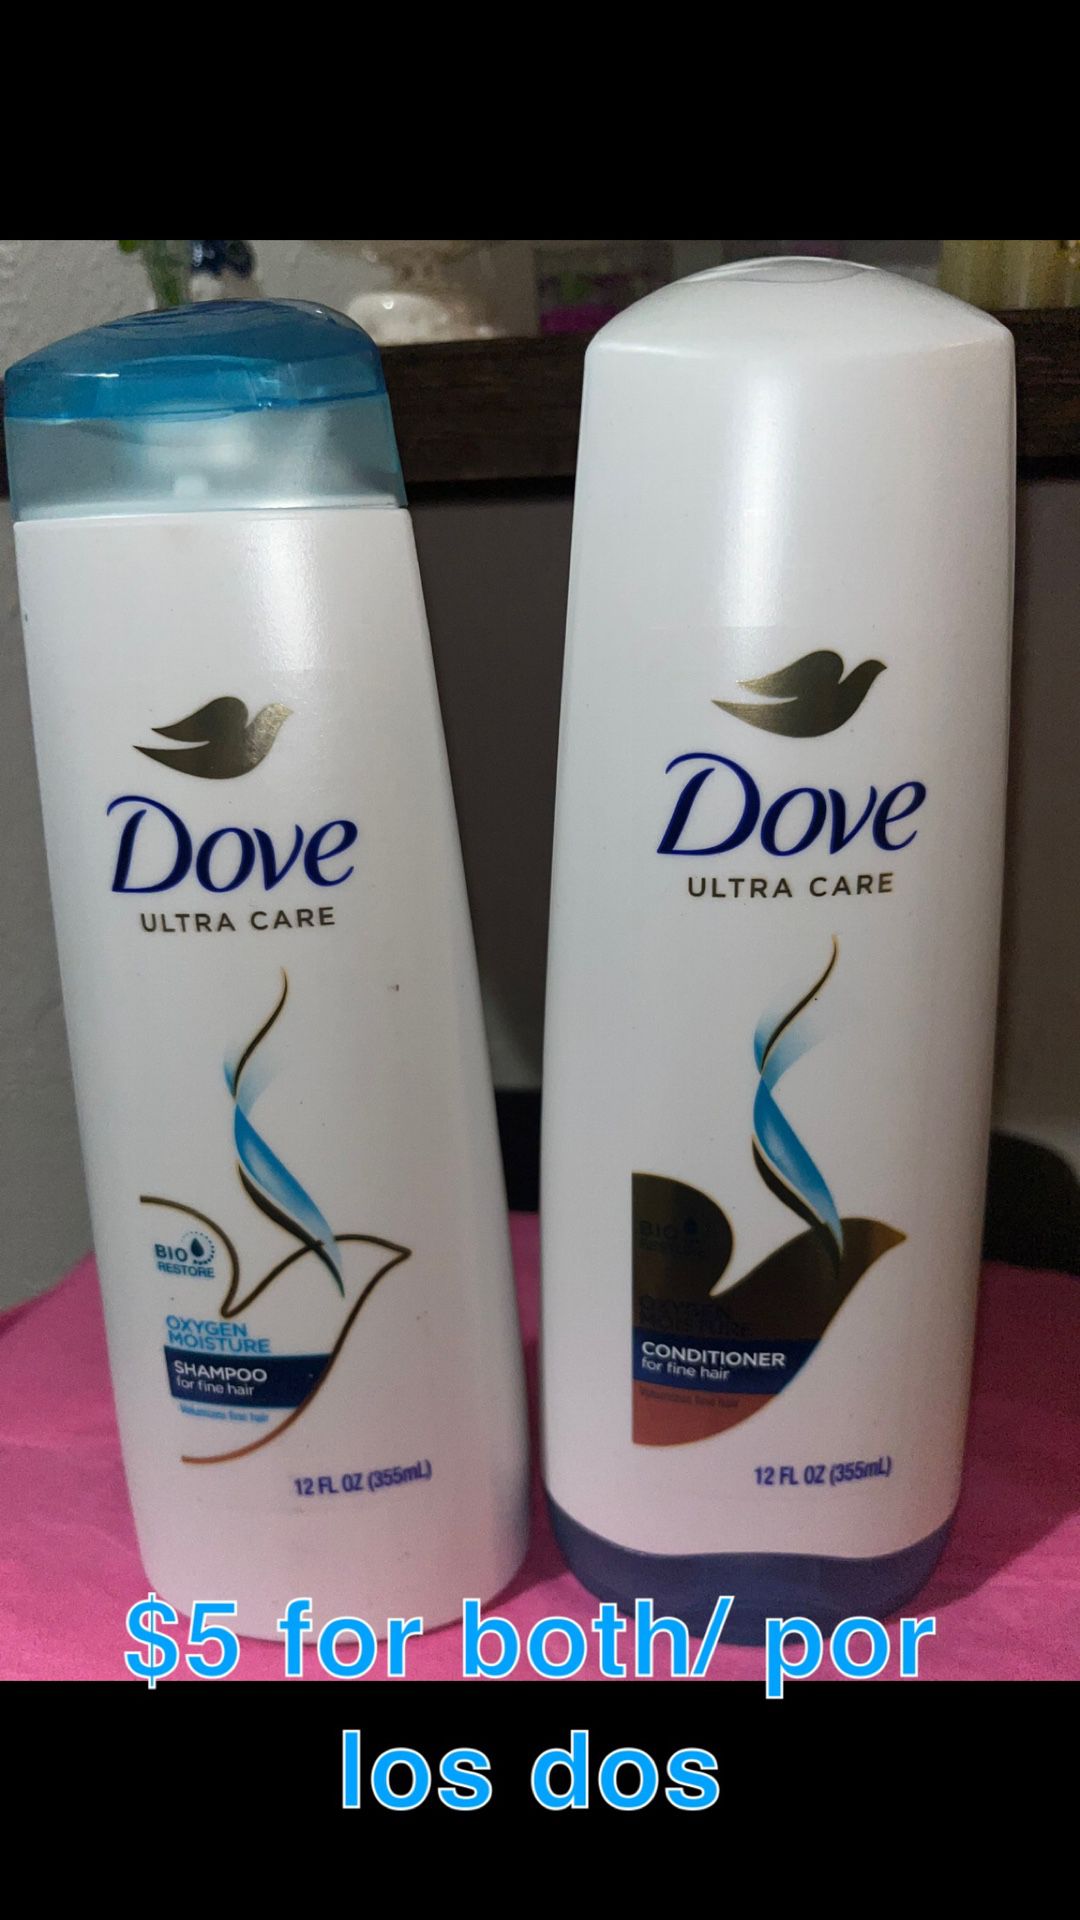 Dove Shampoo And Conditioner 